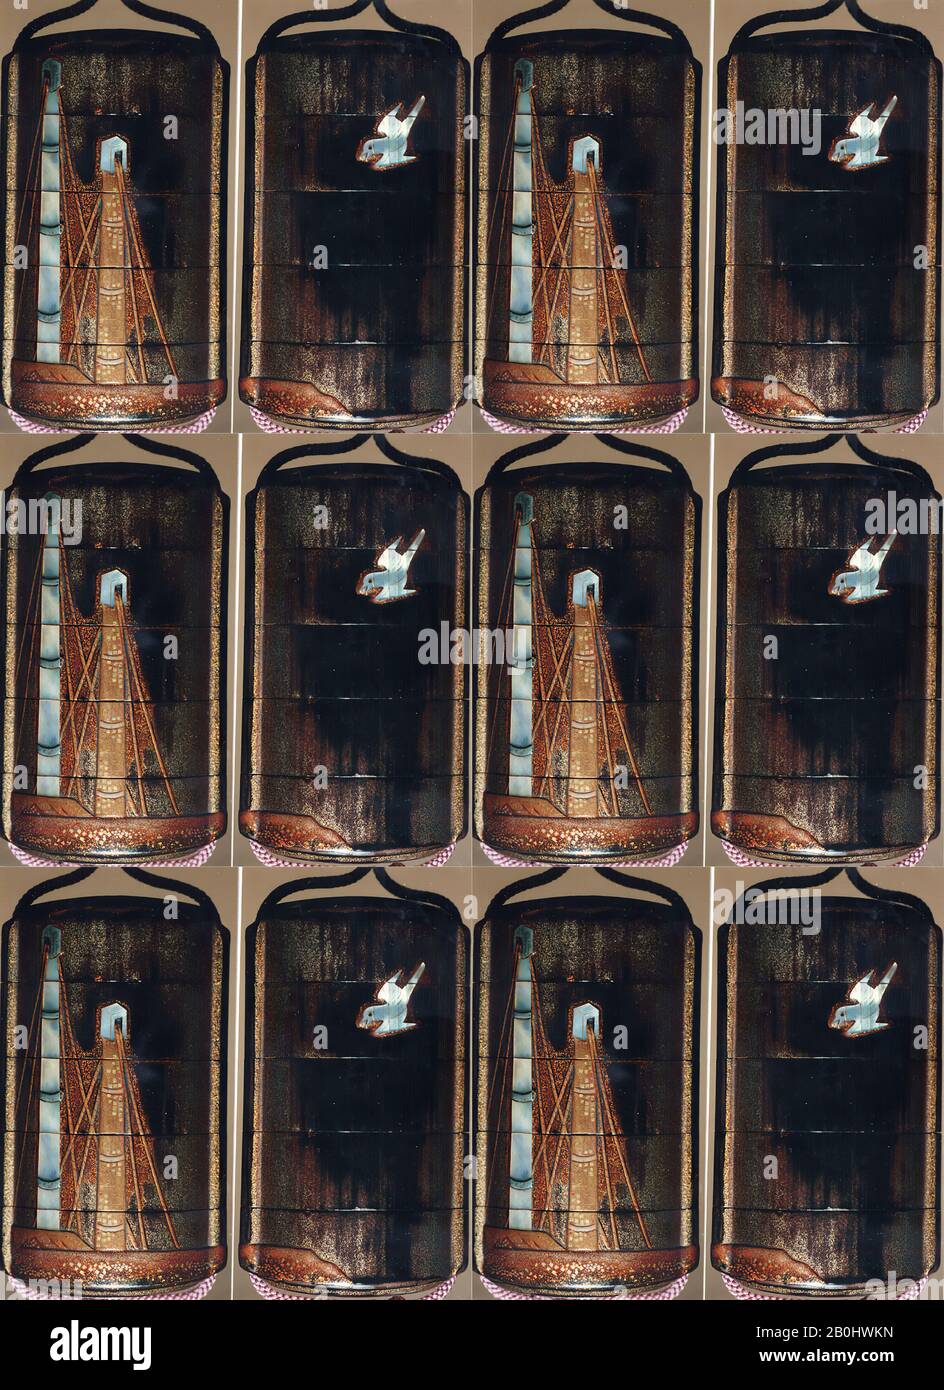 Case (Inrō) avec conception De Mâts de bateaux à voile (obverse); Bird en vol (inverse), Japon, XVIIIe siècle, Japon, Lacquer, roiro, nashiji, or hiramakie, kirigane, raden inlay; intérieur: Nashiji et fundame, 3 x 1 3/4 x 1 1/16 in. (7,6 x 4,4 x 2,7 cm), Inrō Banque D'Images